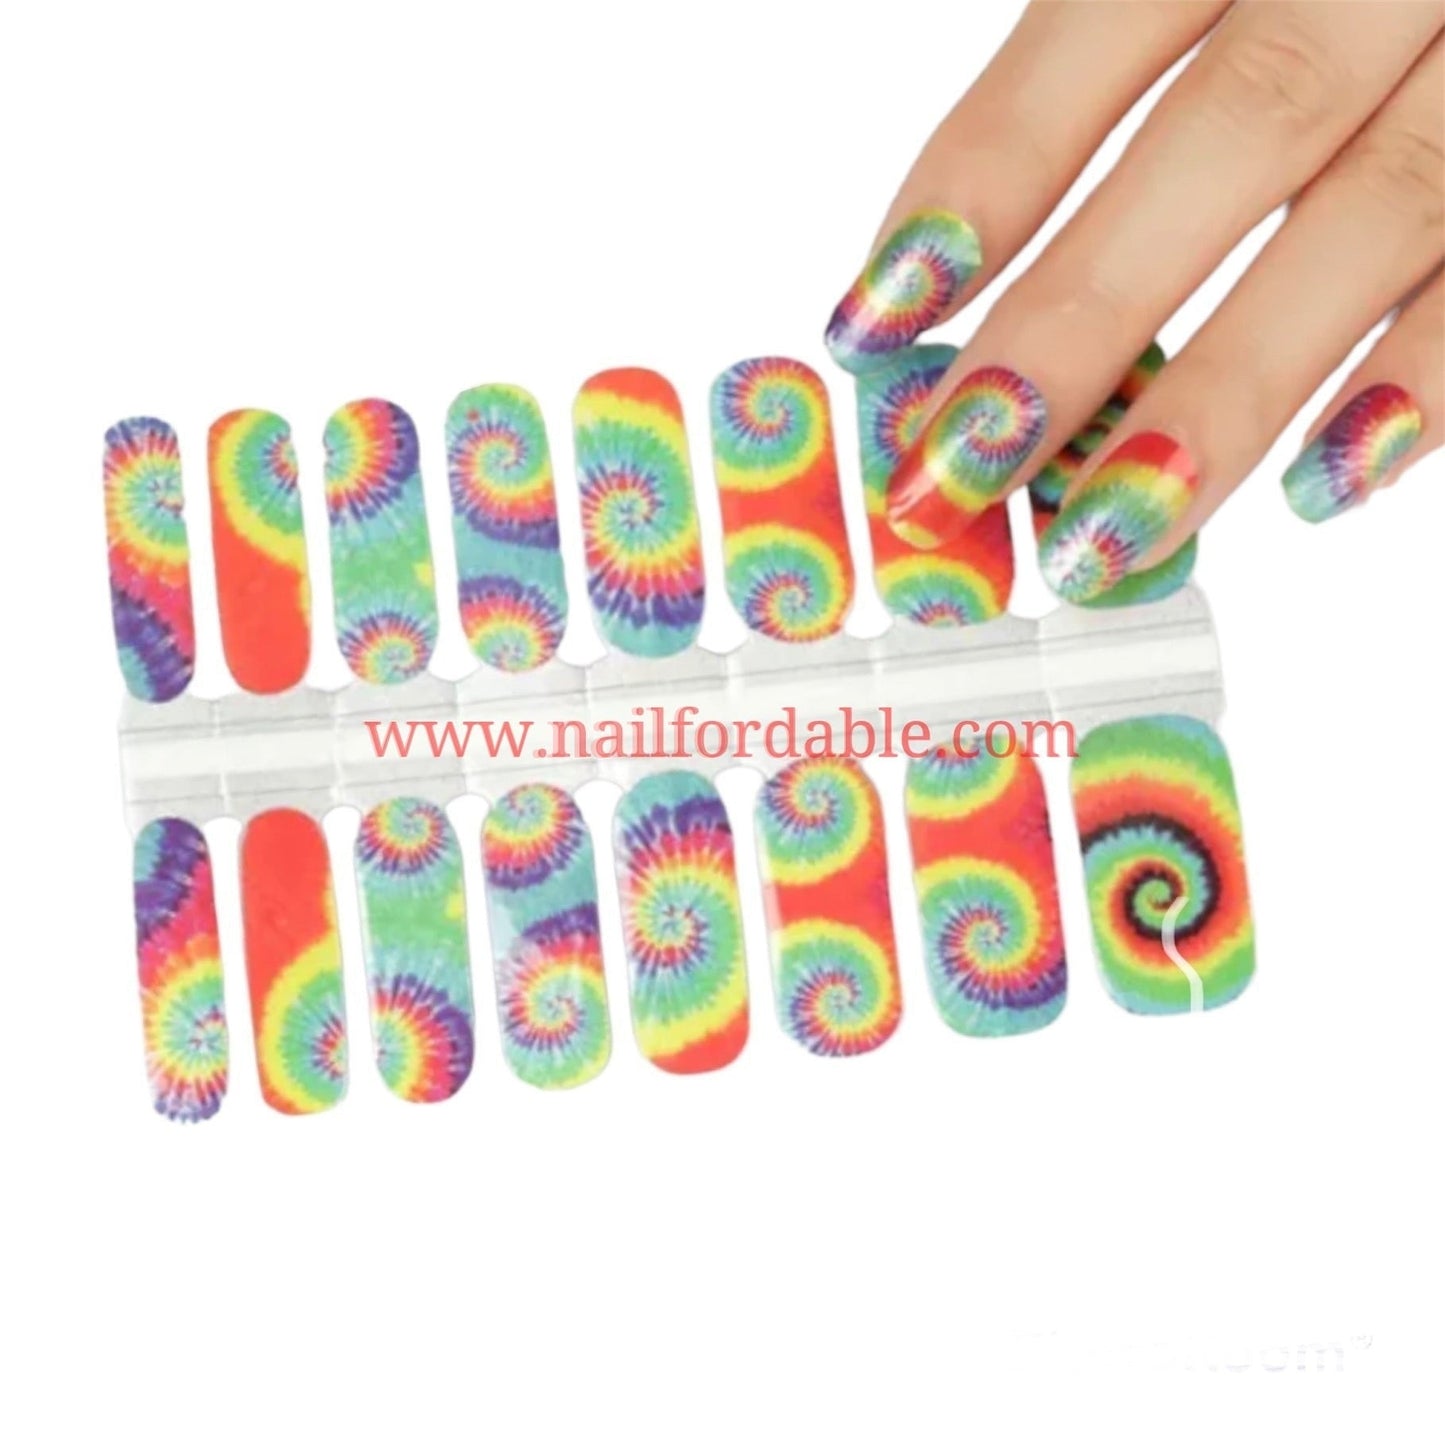 Tie dye Nail Wraps | Semi Cured Gel Wraps | Gel Nail Wraps |Nail Polish | Nail Stickers